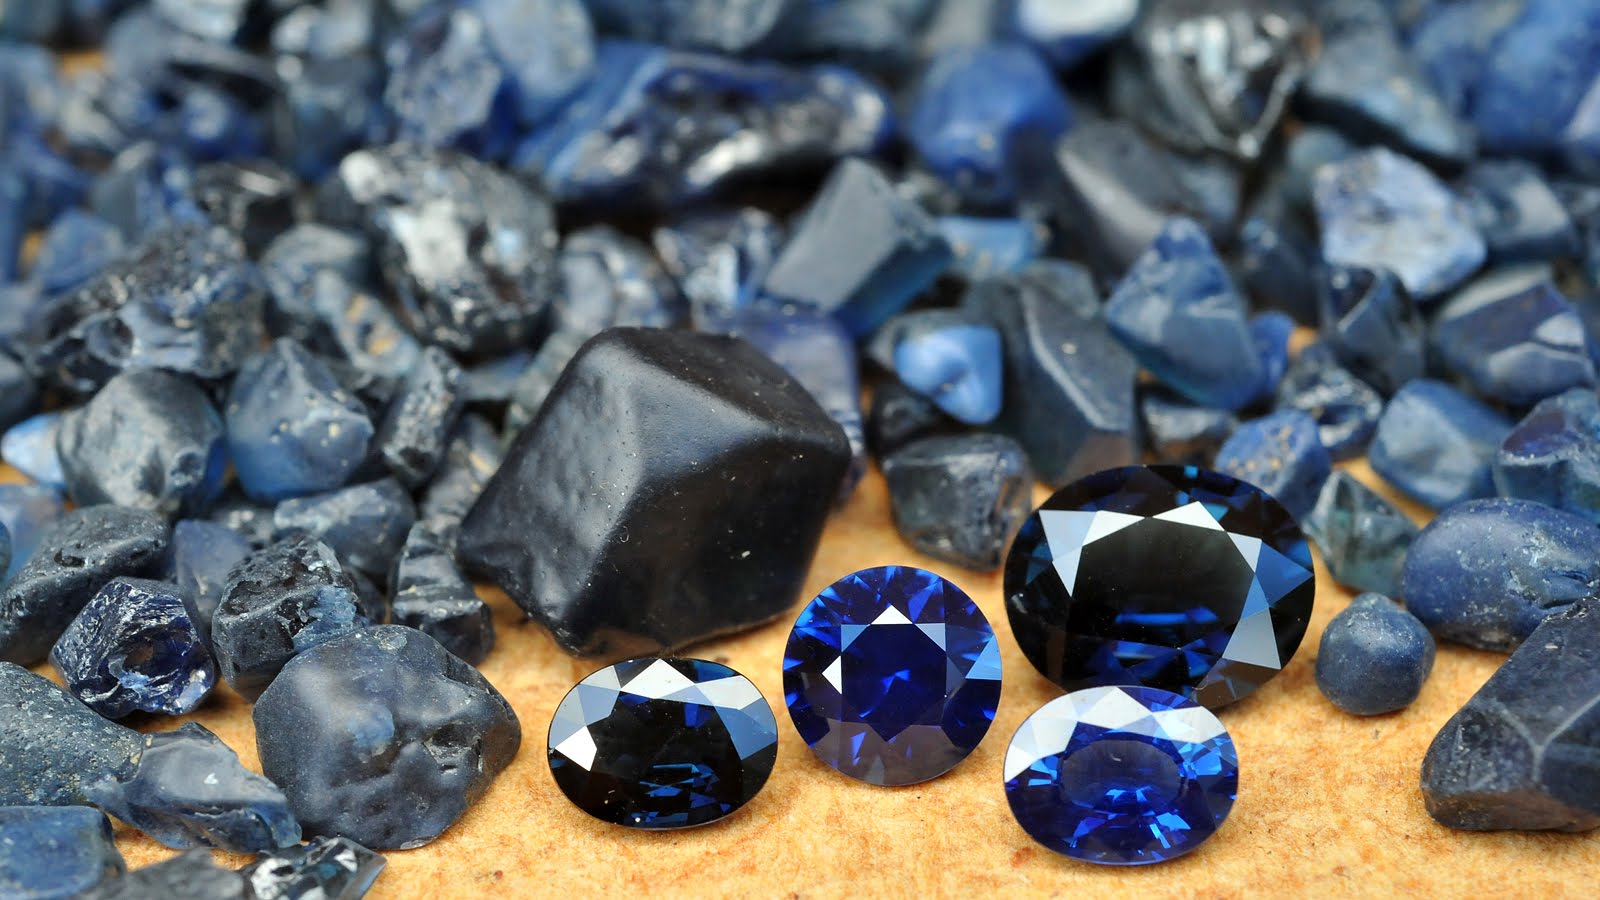 Sapphire Stones